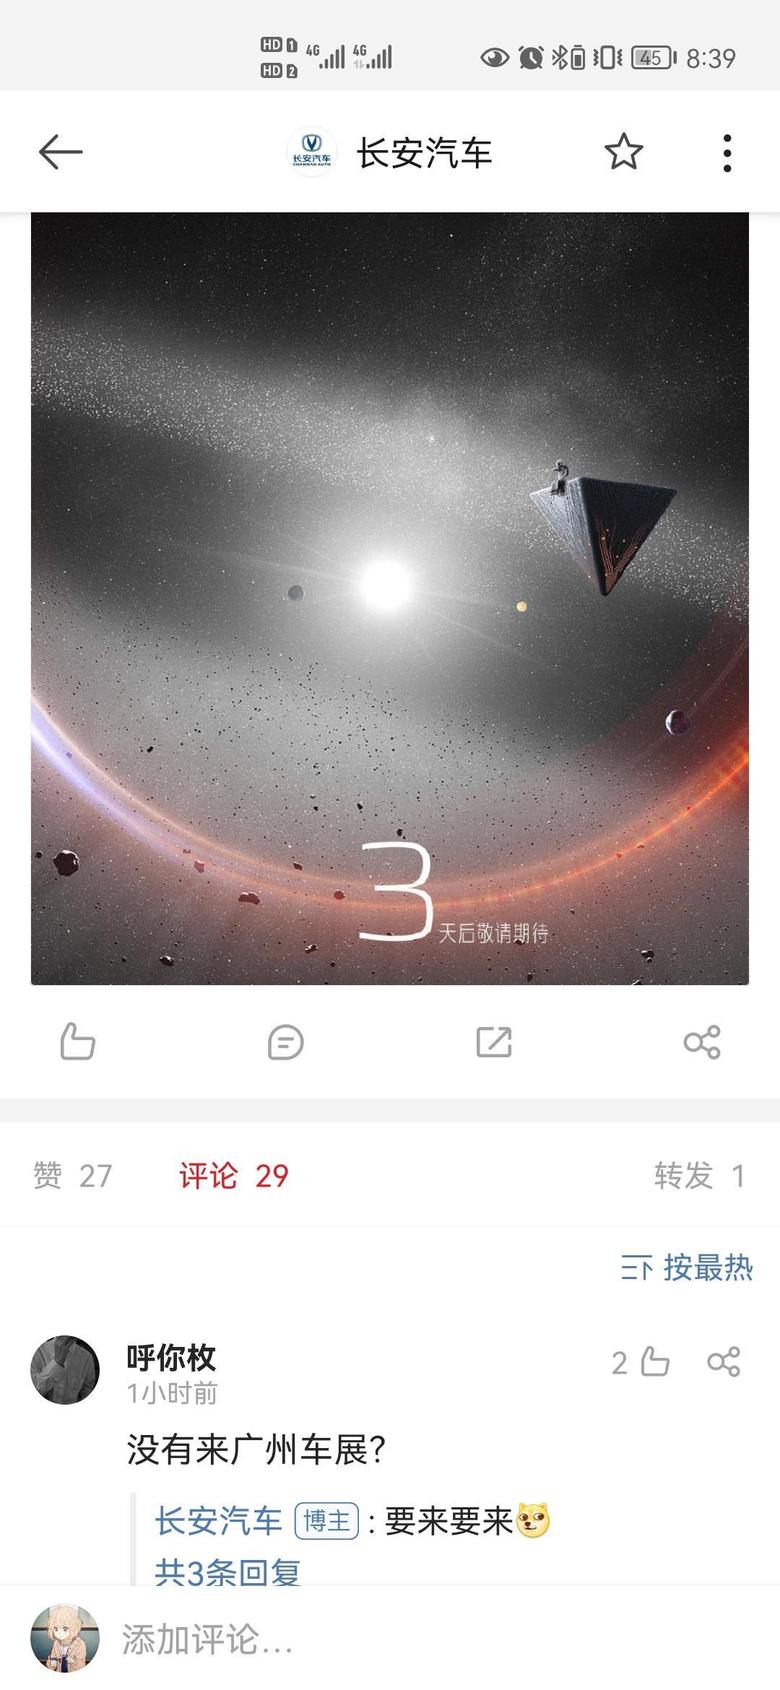 长安uni v-如图，但重庆发布会是21号，我猜广州车展也得21号才能看到univ，前两天可能用黑布盖着，广州的朋友可以晚两天去现场看车了